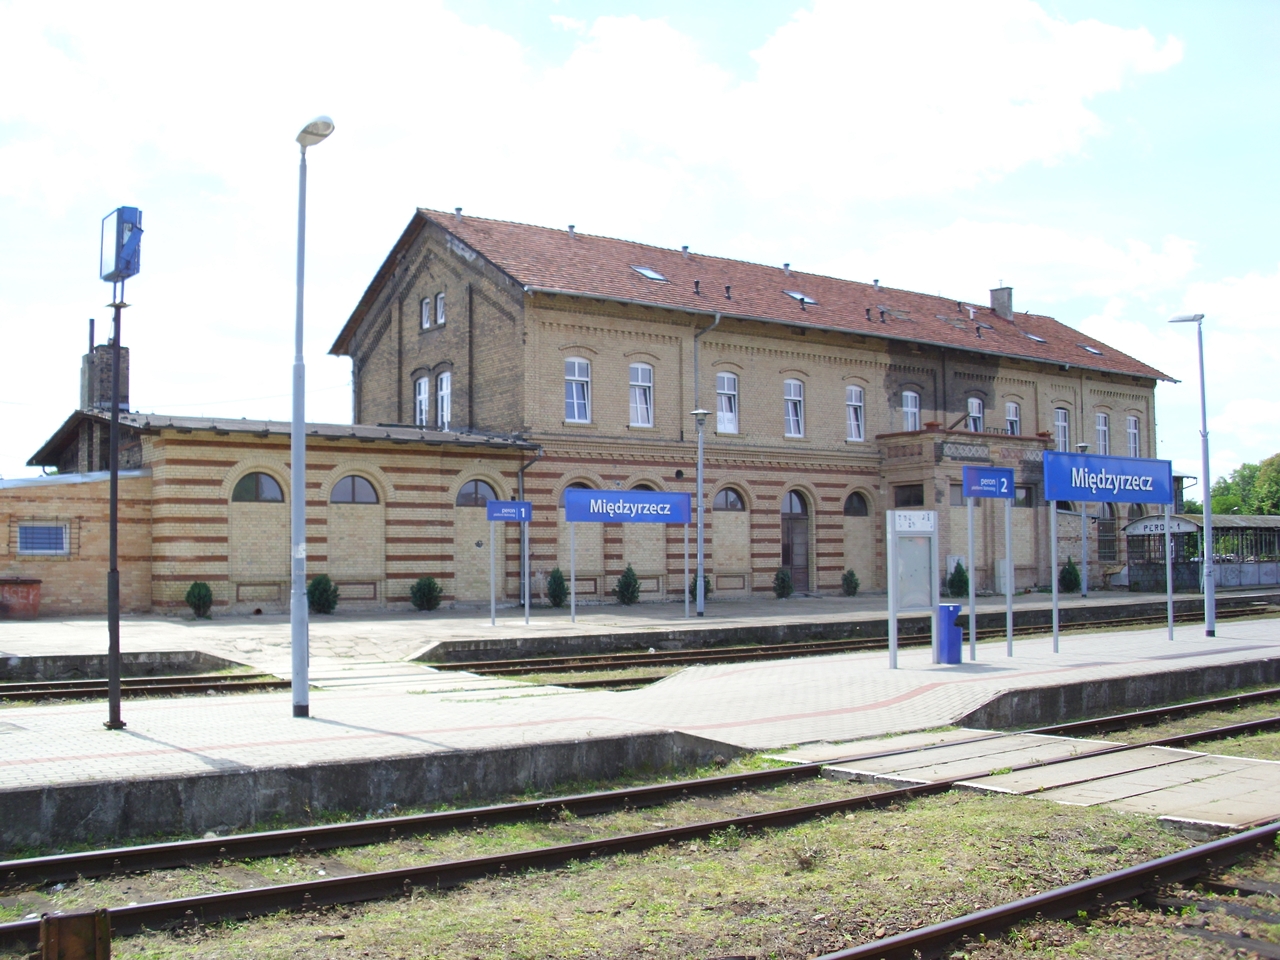 Stacja Midzyrzecz - widok budynku dworca i peronw